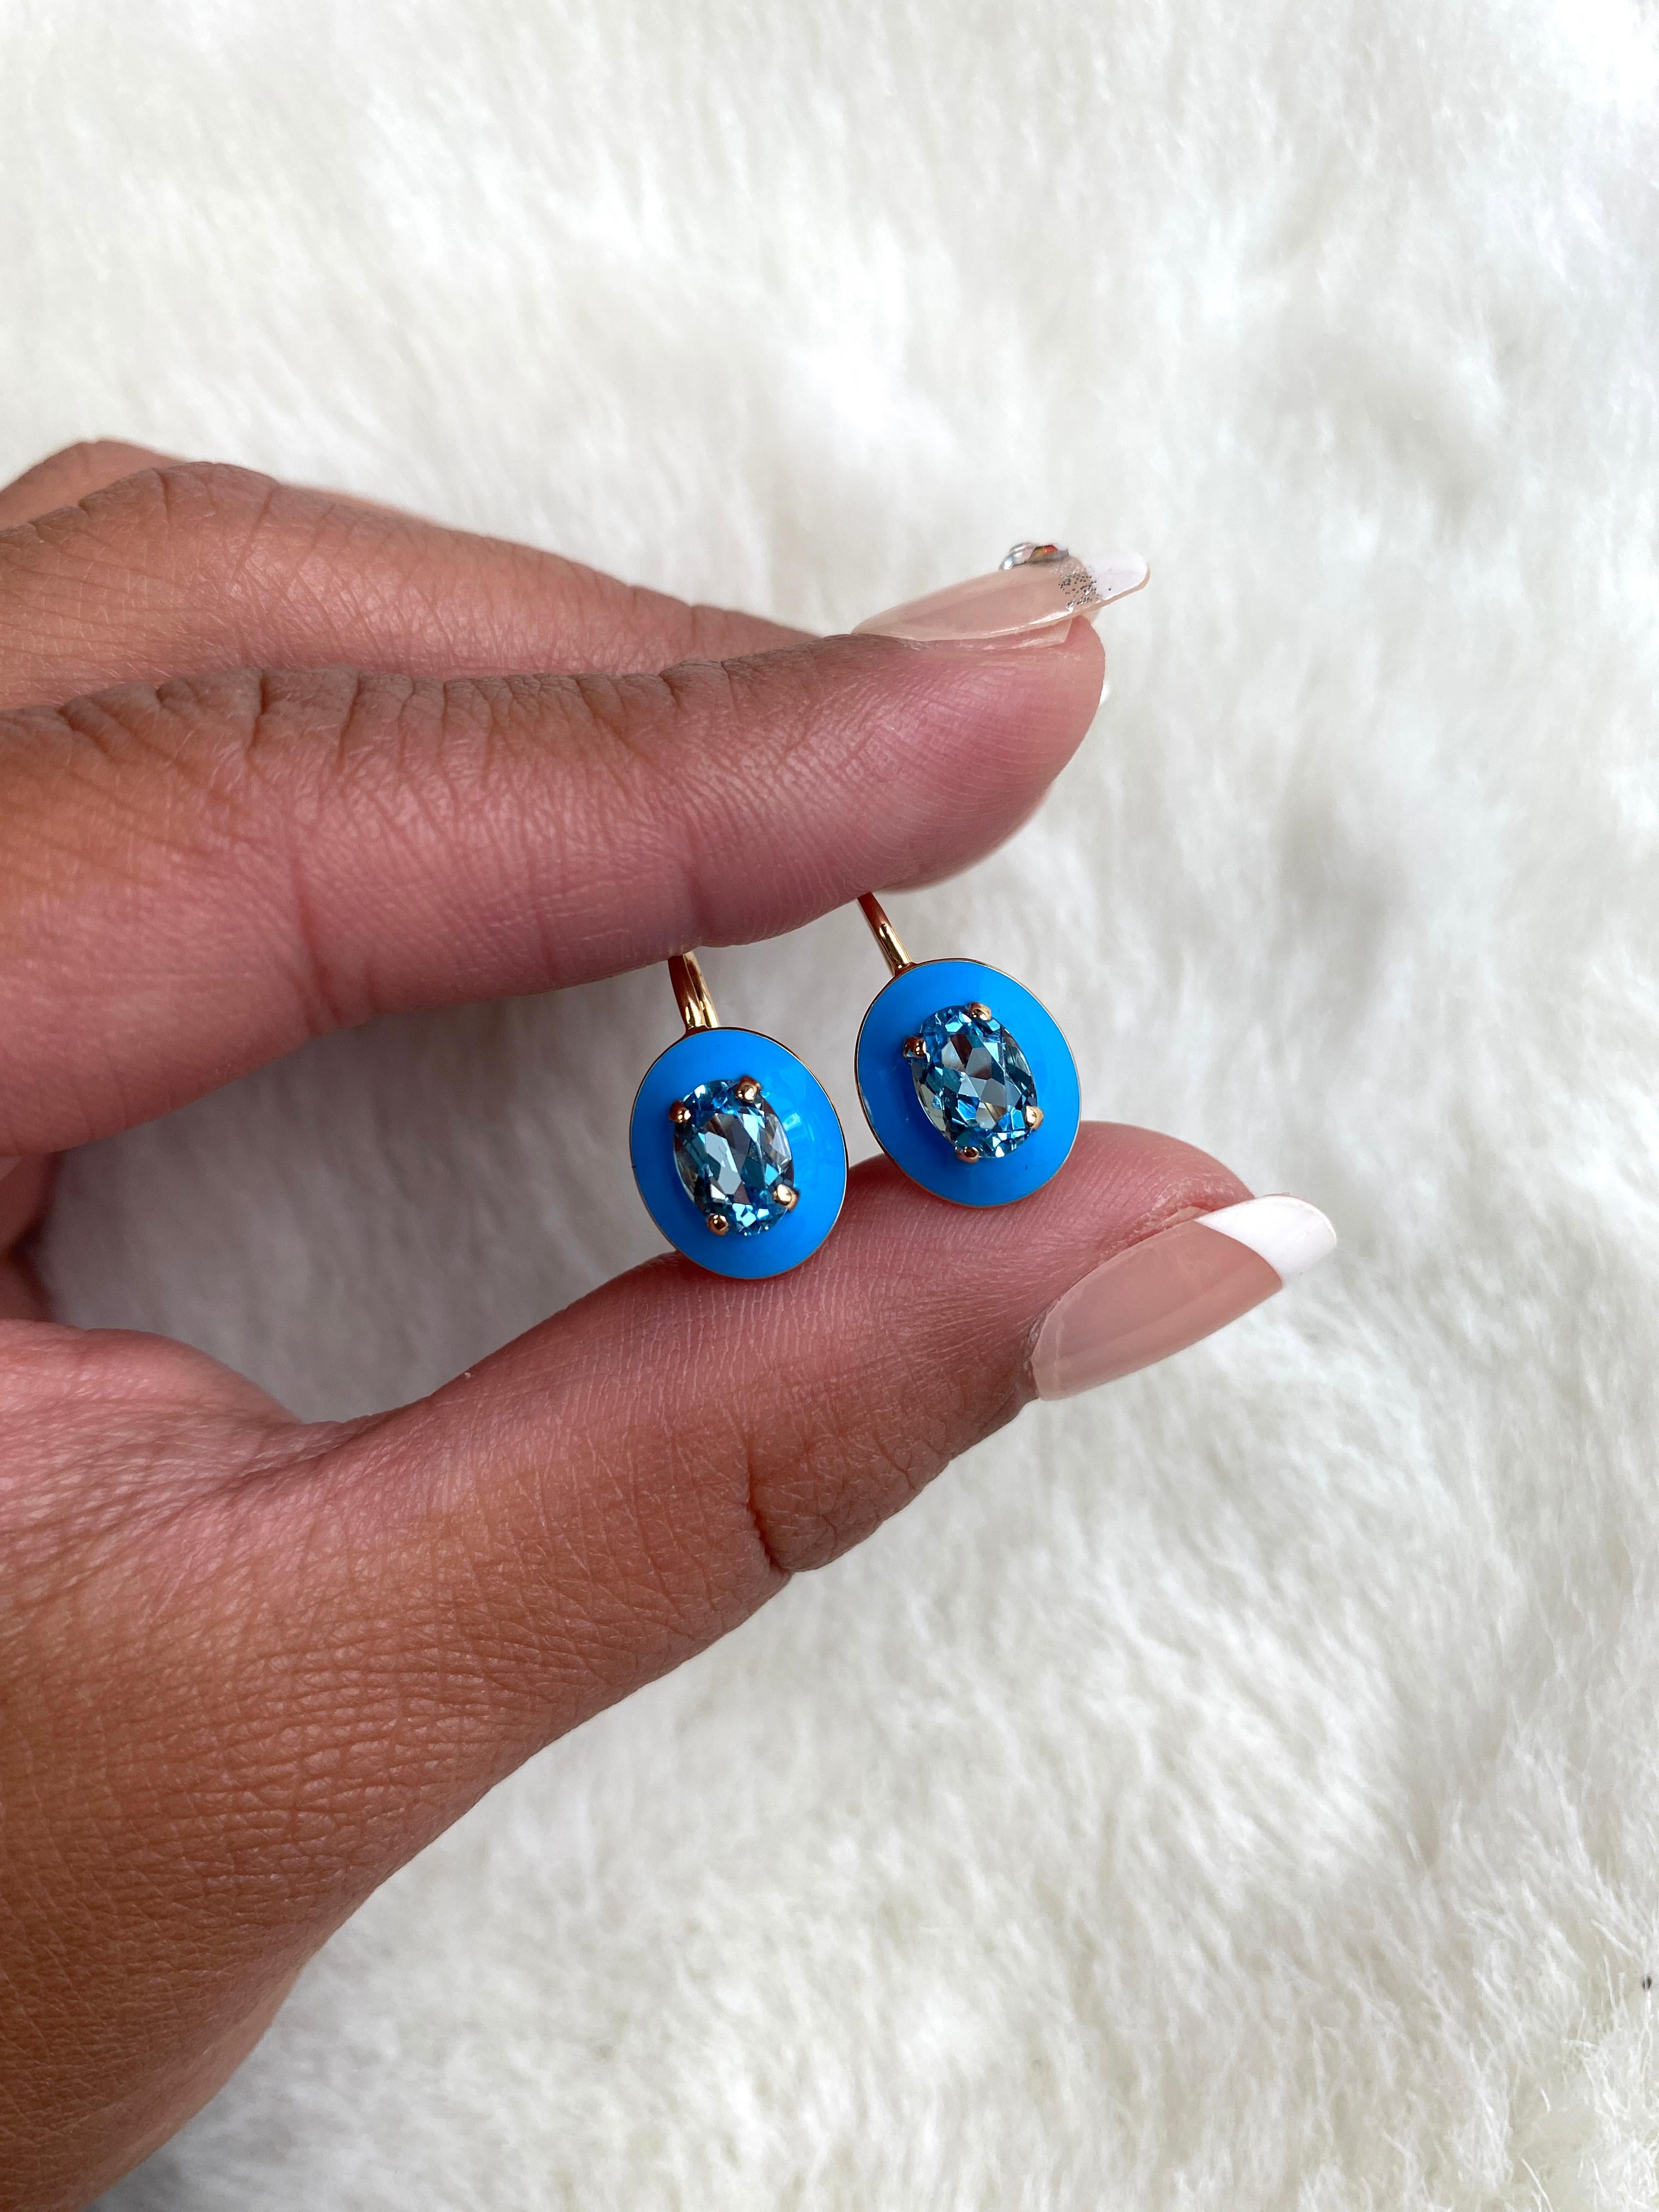 Diese einzigartigen Ohrringe sind ein facettierter ovaler Blautopas mit türkisfarbener Emaille-Bordüre und Hebelverschluss. Es stammt aus unserer Queen